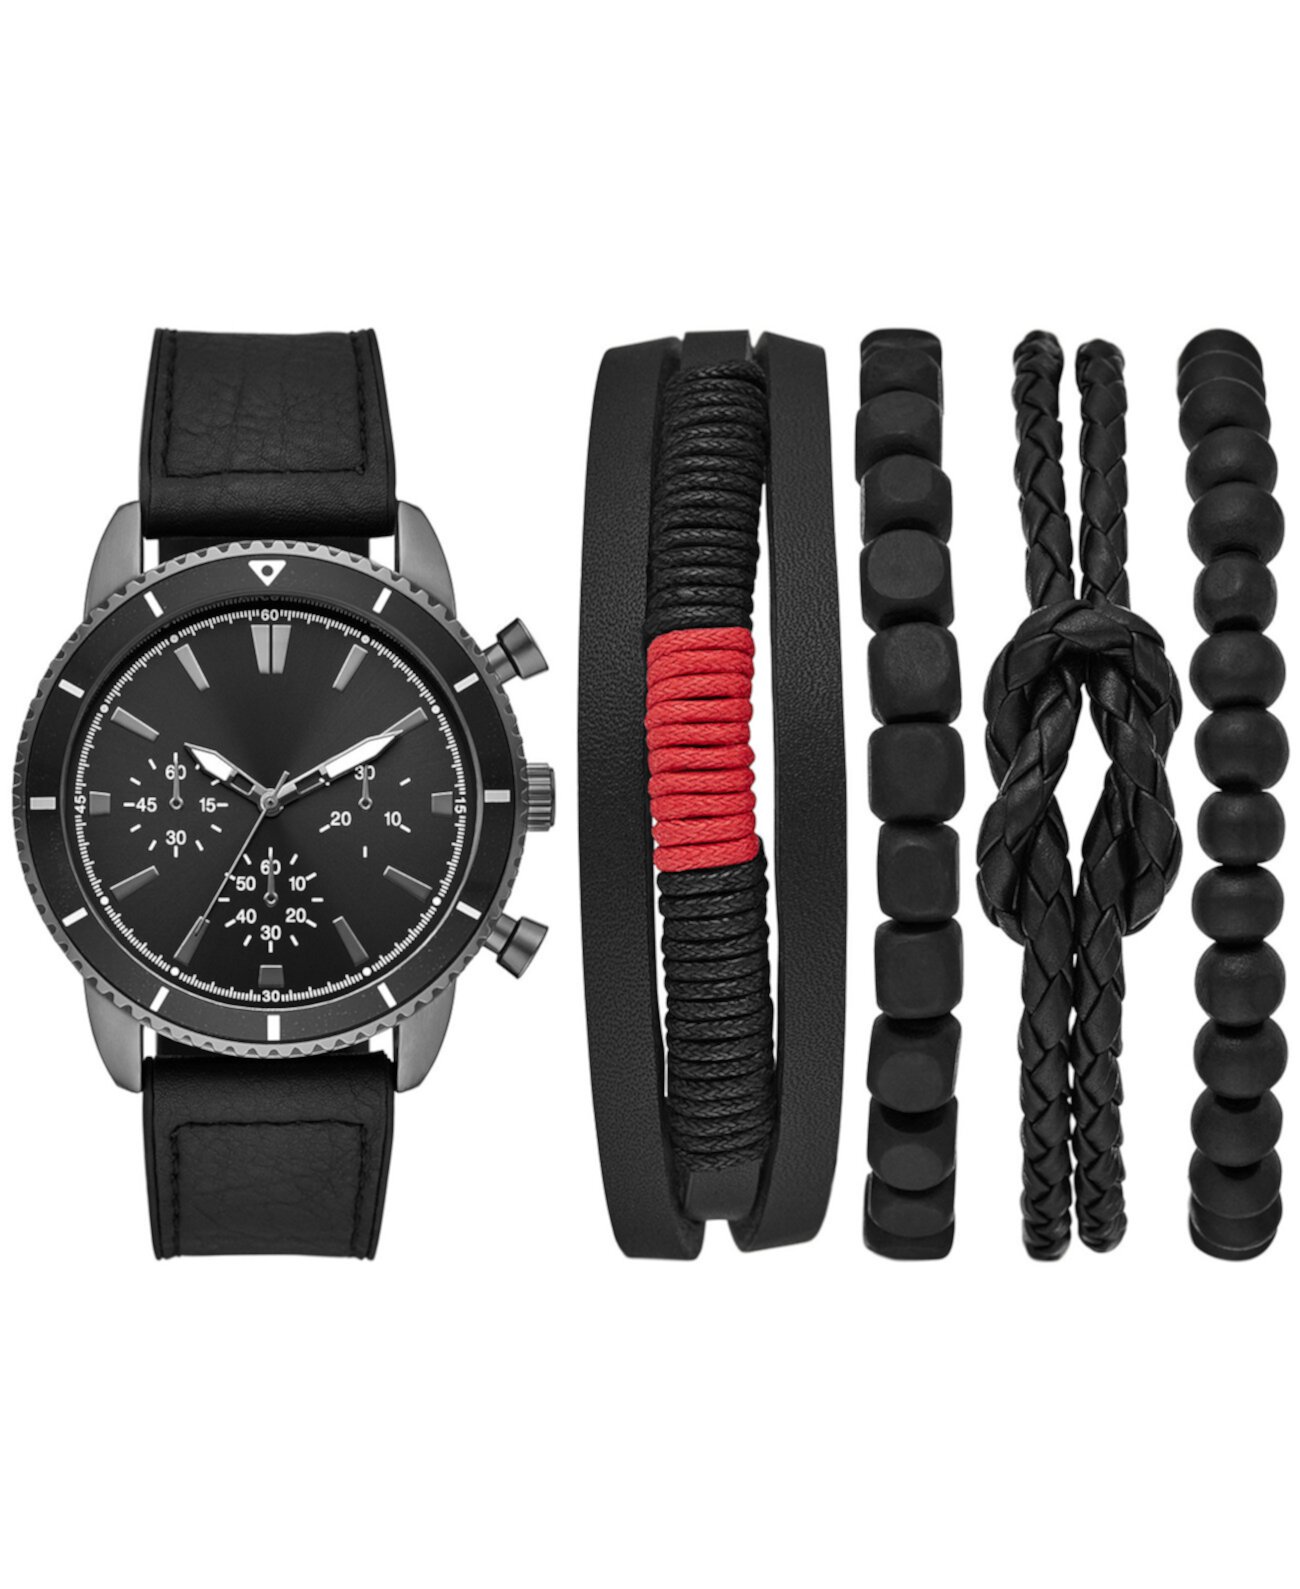 Мужские часы и браслеты с черным ремешком из искусственной кожи, подарочный набор 45 мм Folio